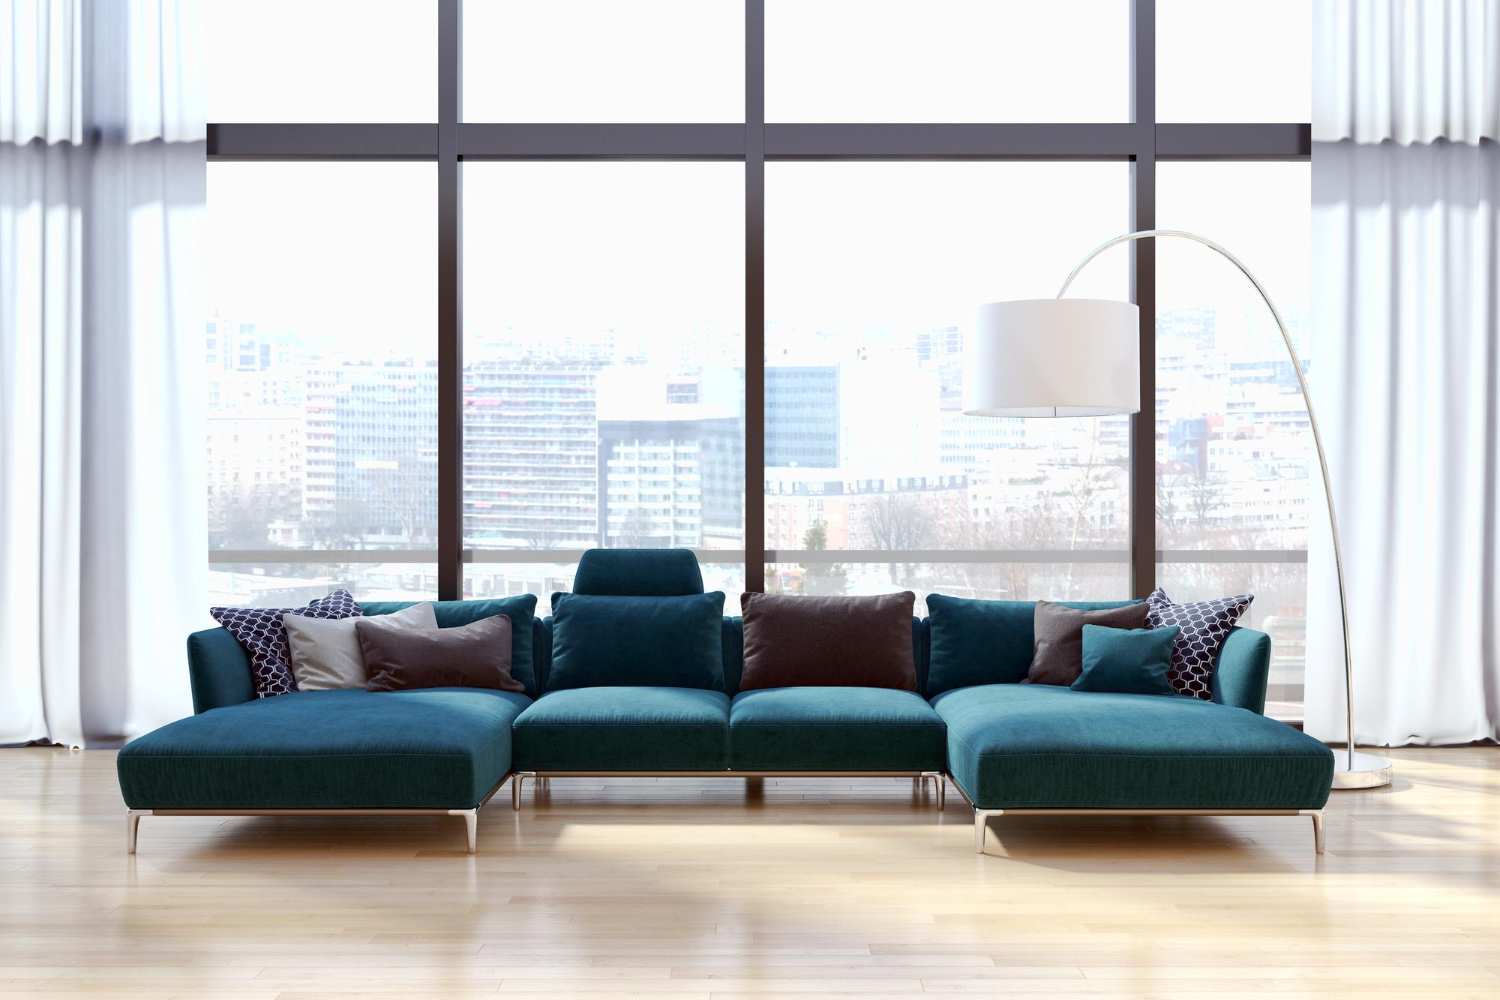 При выборе дивана для офиса важно сбалансировать практичность и эстетику